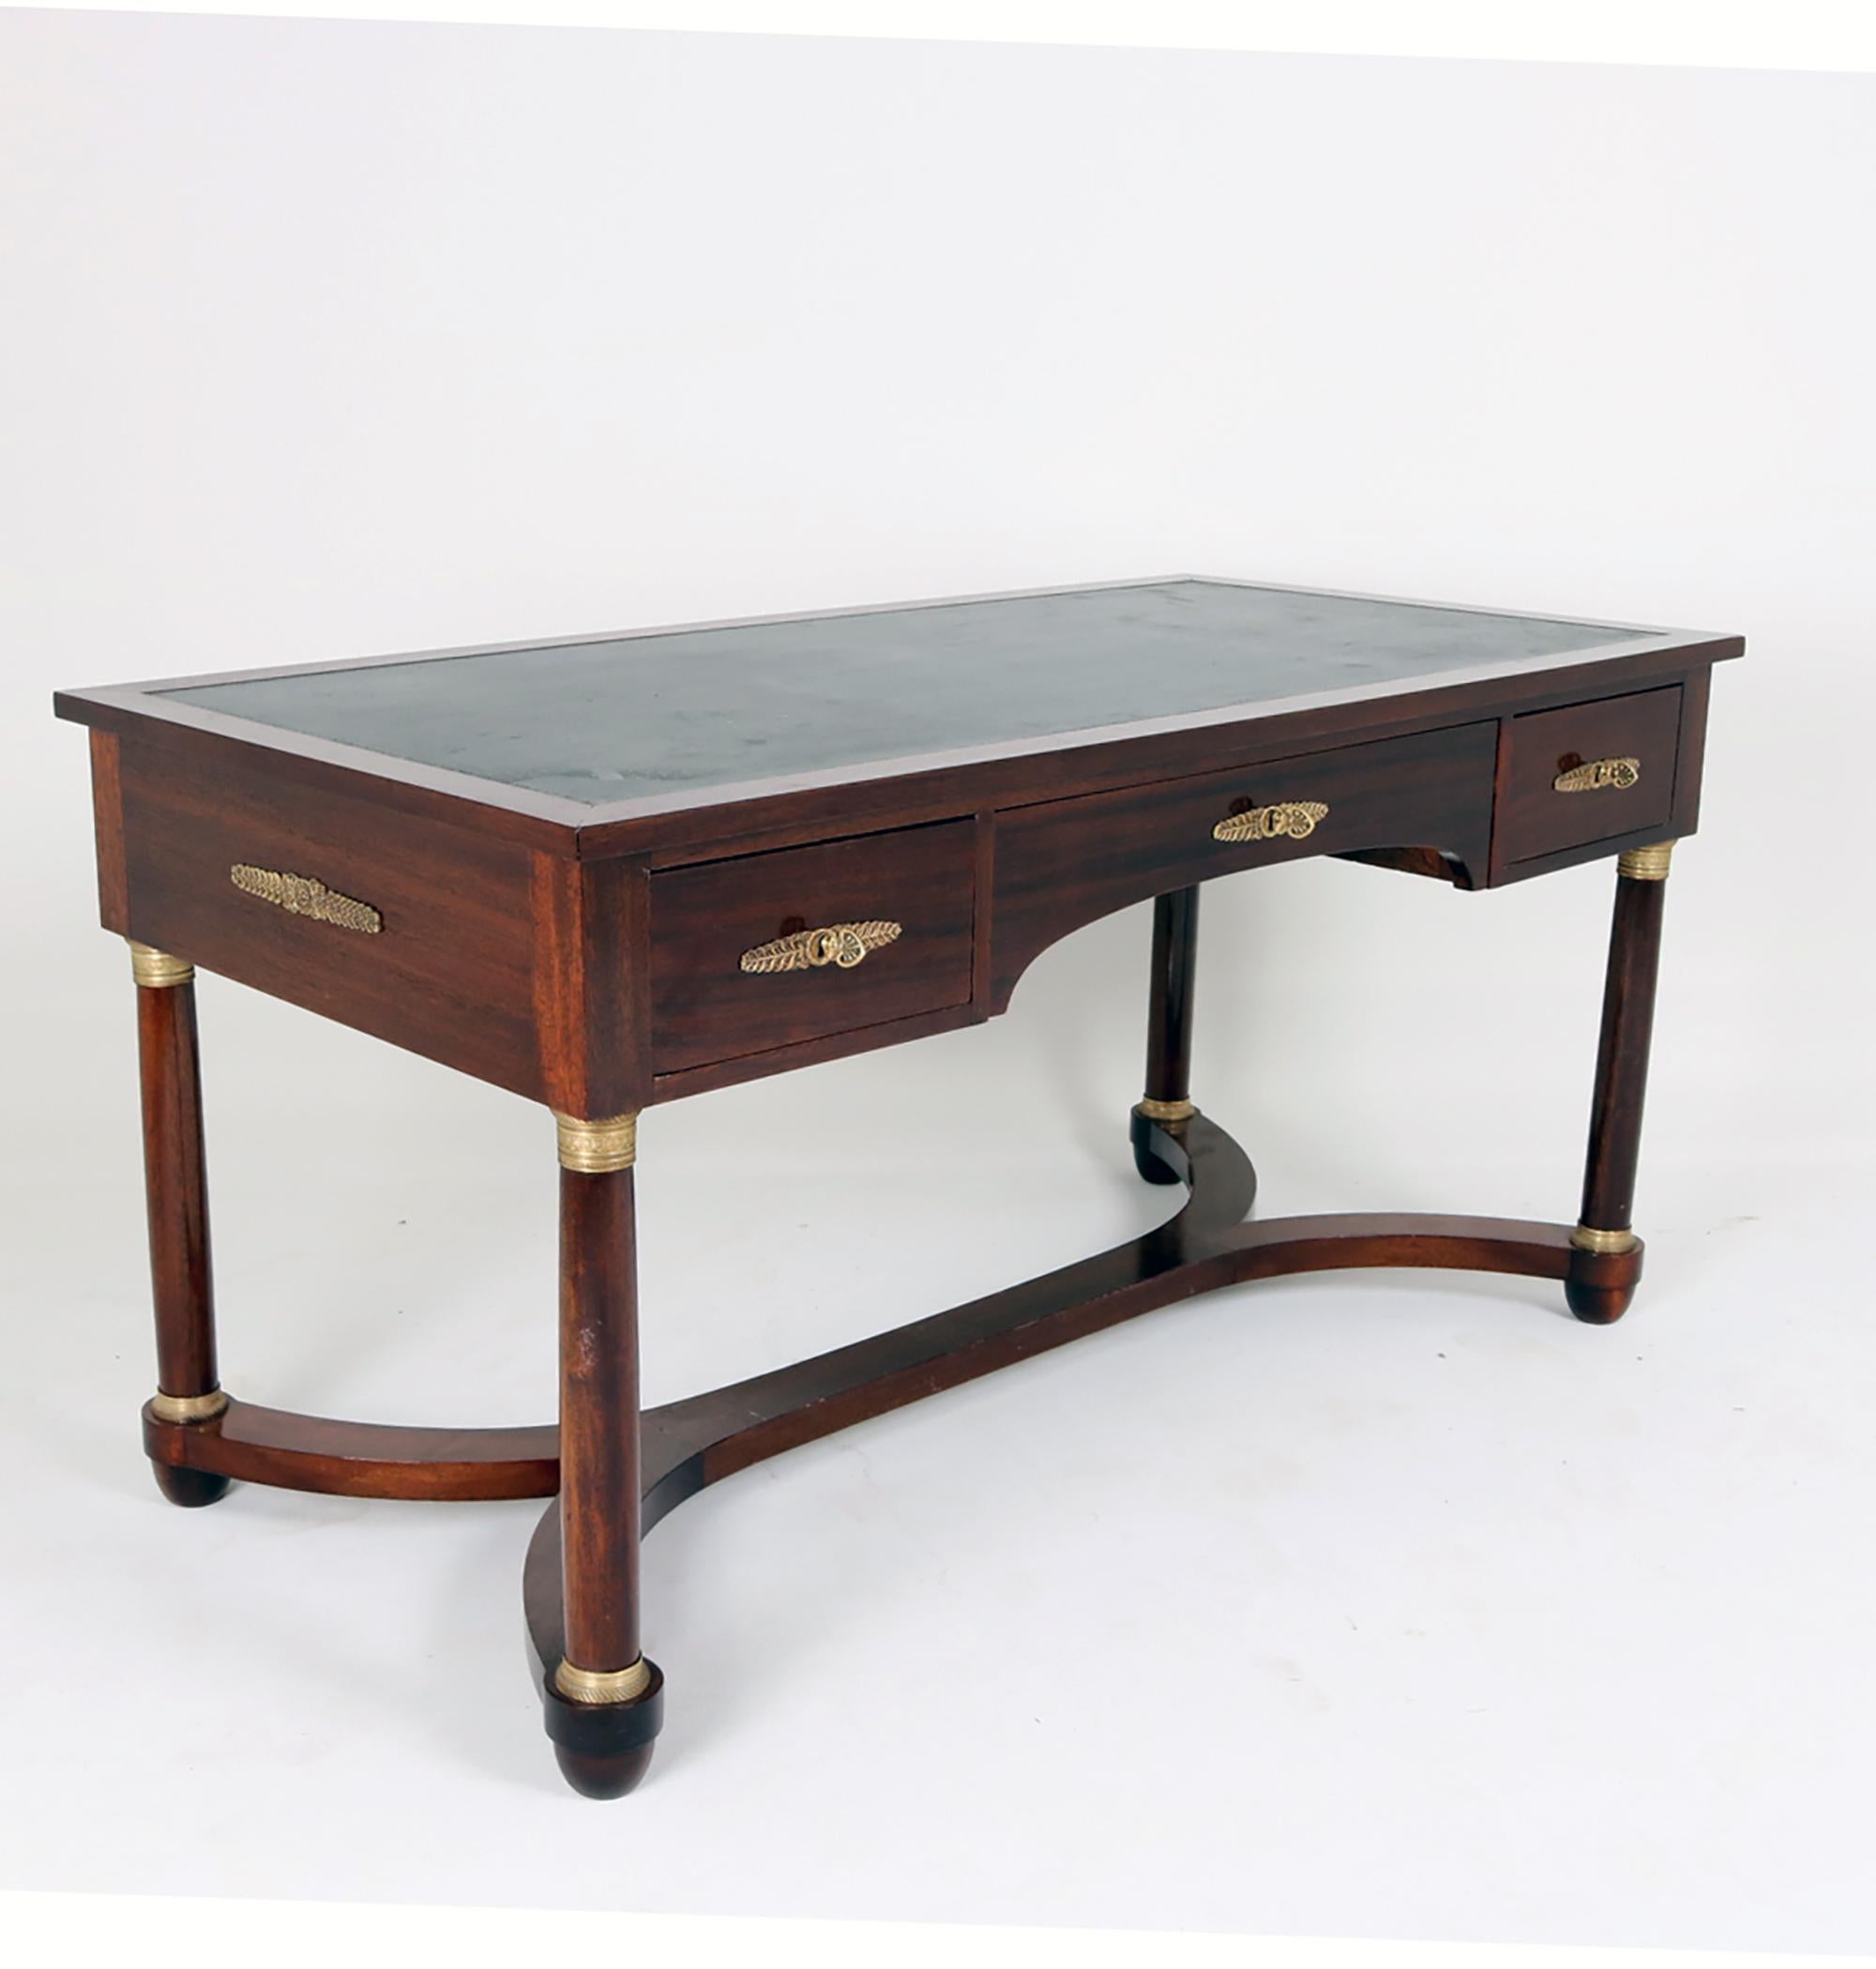 Empire-Schreibtisch mit Mahagoni-Furnier, verziert mit zahlreichen Messing-Applikationen. Die Oberfläche der Möbel ist mit einer Politur versehen, die einen dezenten Glanz verleiht. Die Tischplatte ist mit praktischem Leder bezogen.
Der Zustand